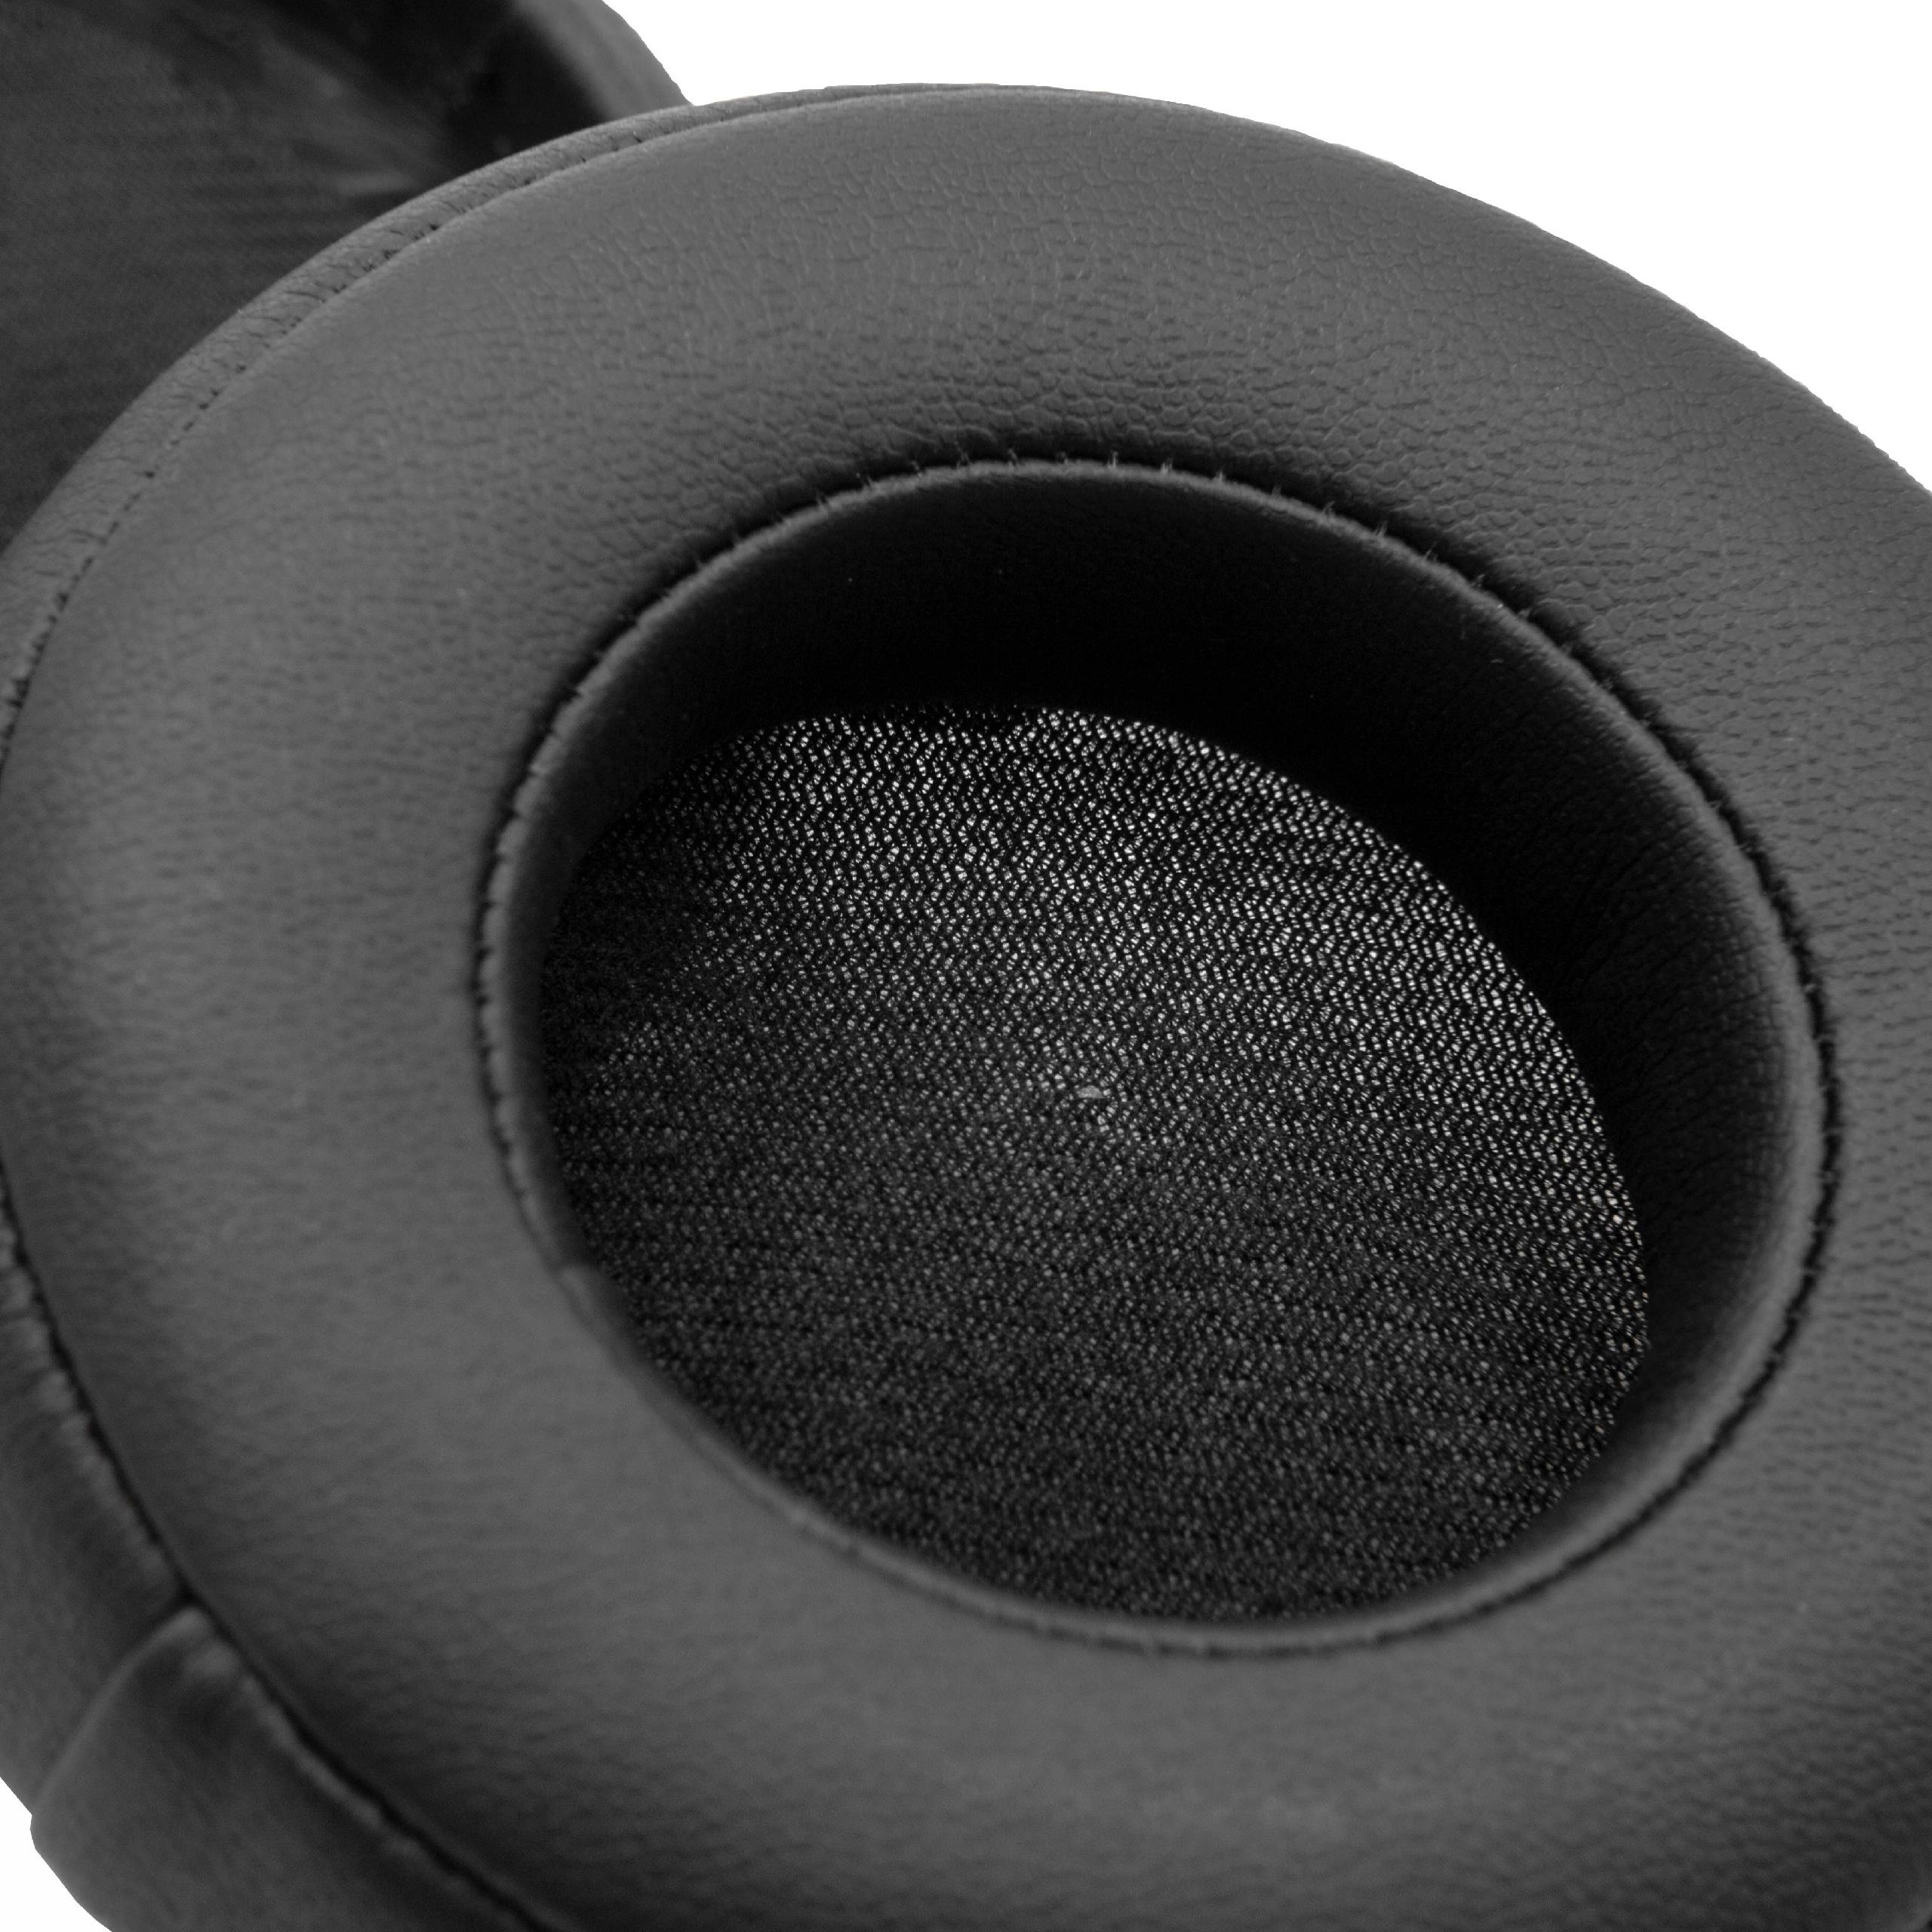 1 paio di cuscinetti per Beats Monster by Dr. Dre cuffie ecc. - poliuretano / gommapiuma, 8,5 cm diametro este